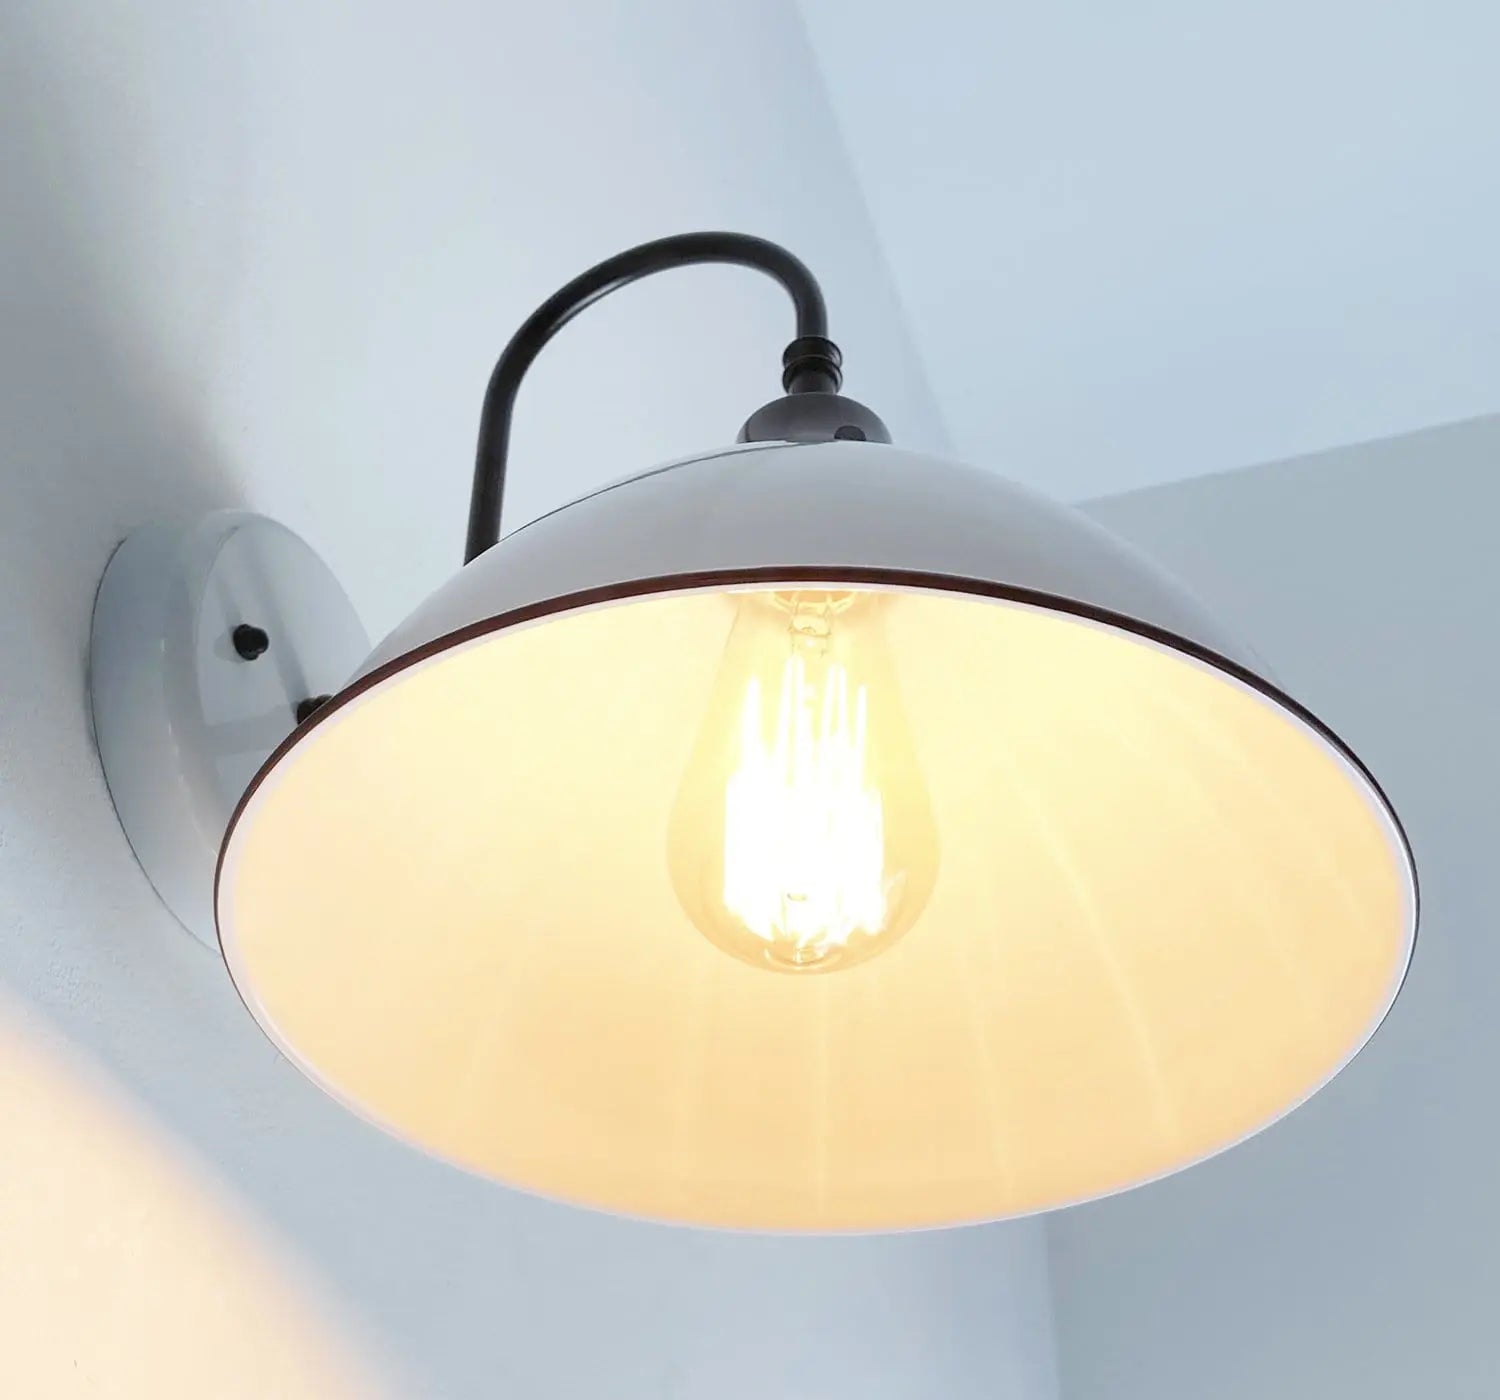 Knikken Rondlopen Mangel White Wall Sconce Light for Farmhouse Bathroom Lighting Fixtures – The Lamp  Goods